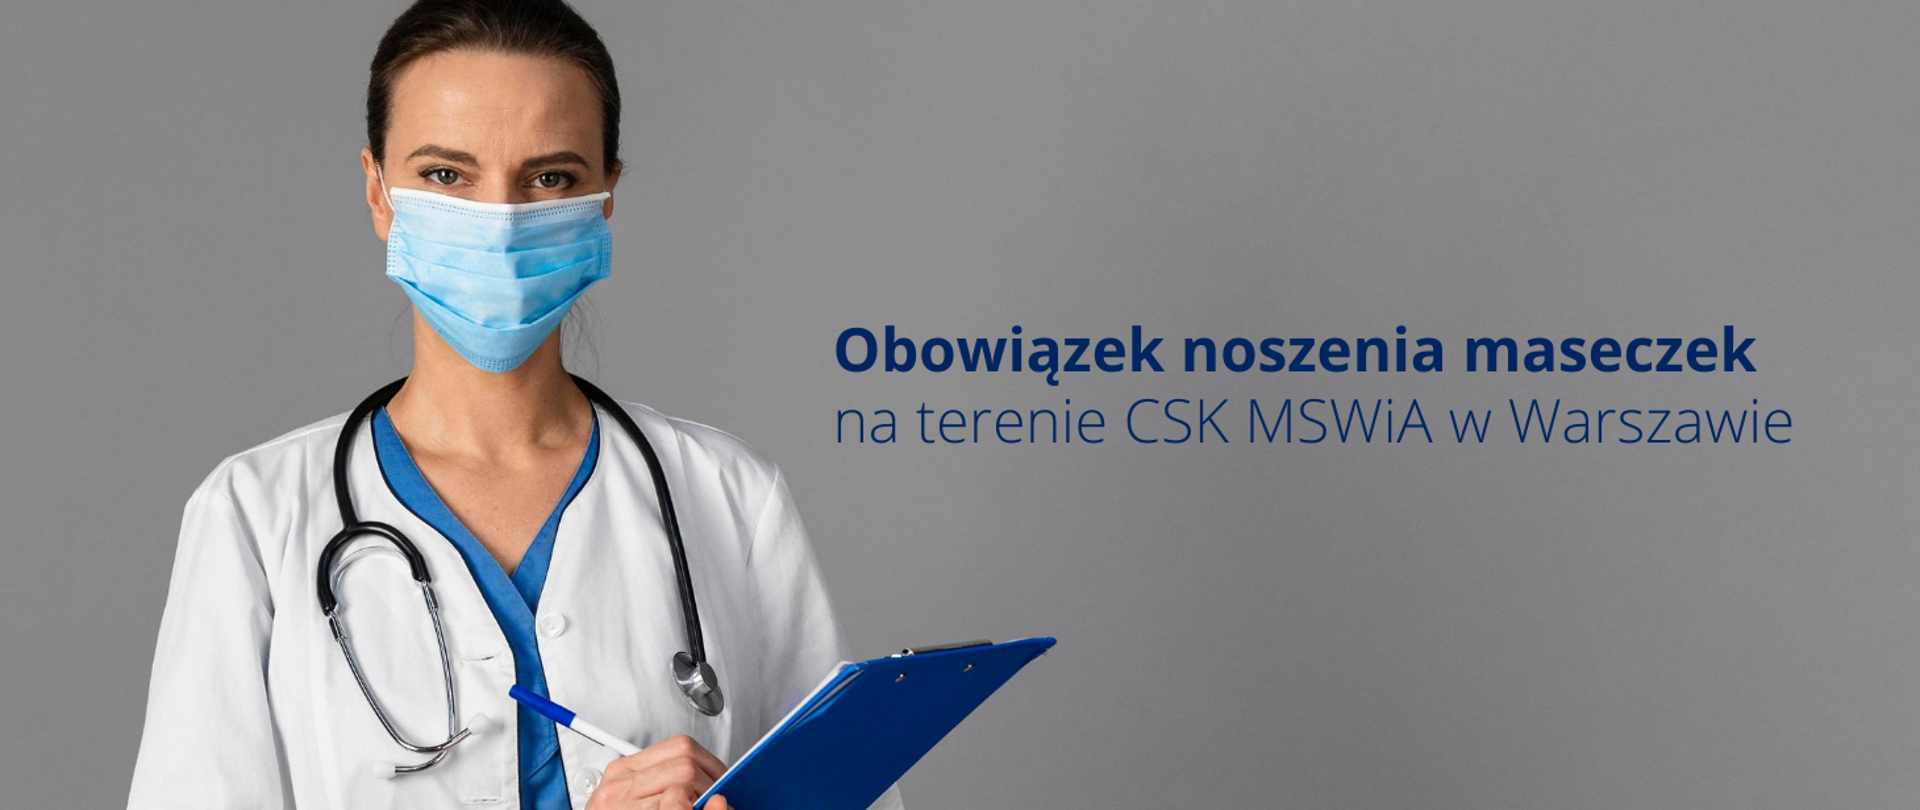 Obowiązek noszenia maseczek na terenie CSK MSWiA w Warszawie